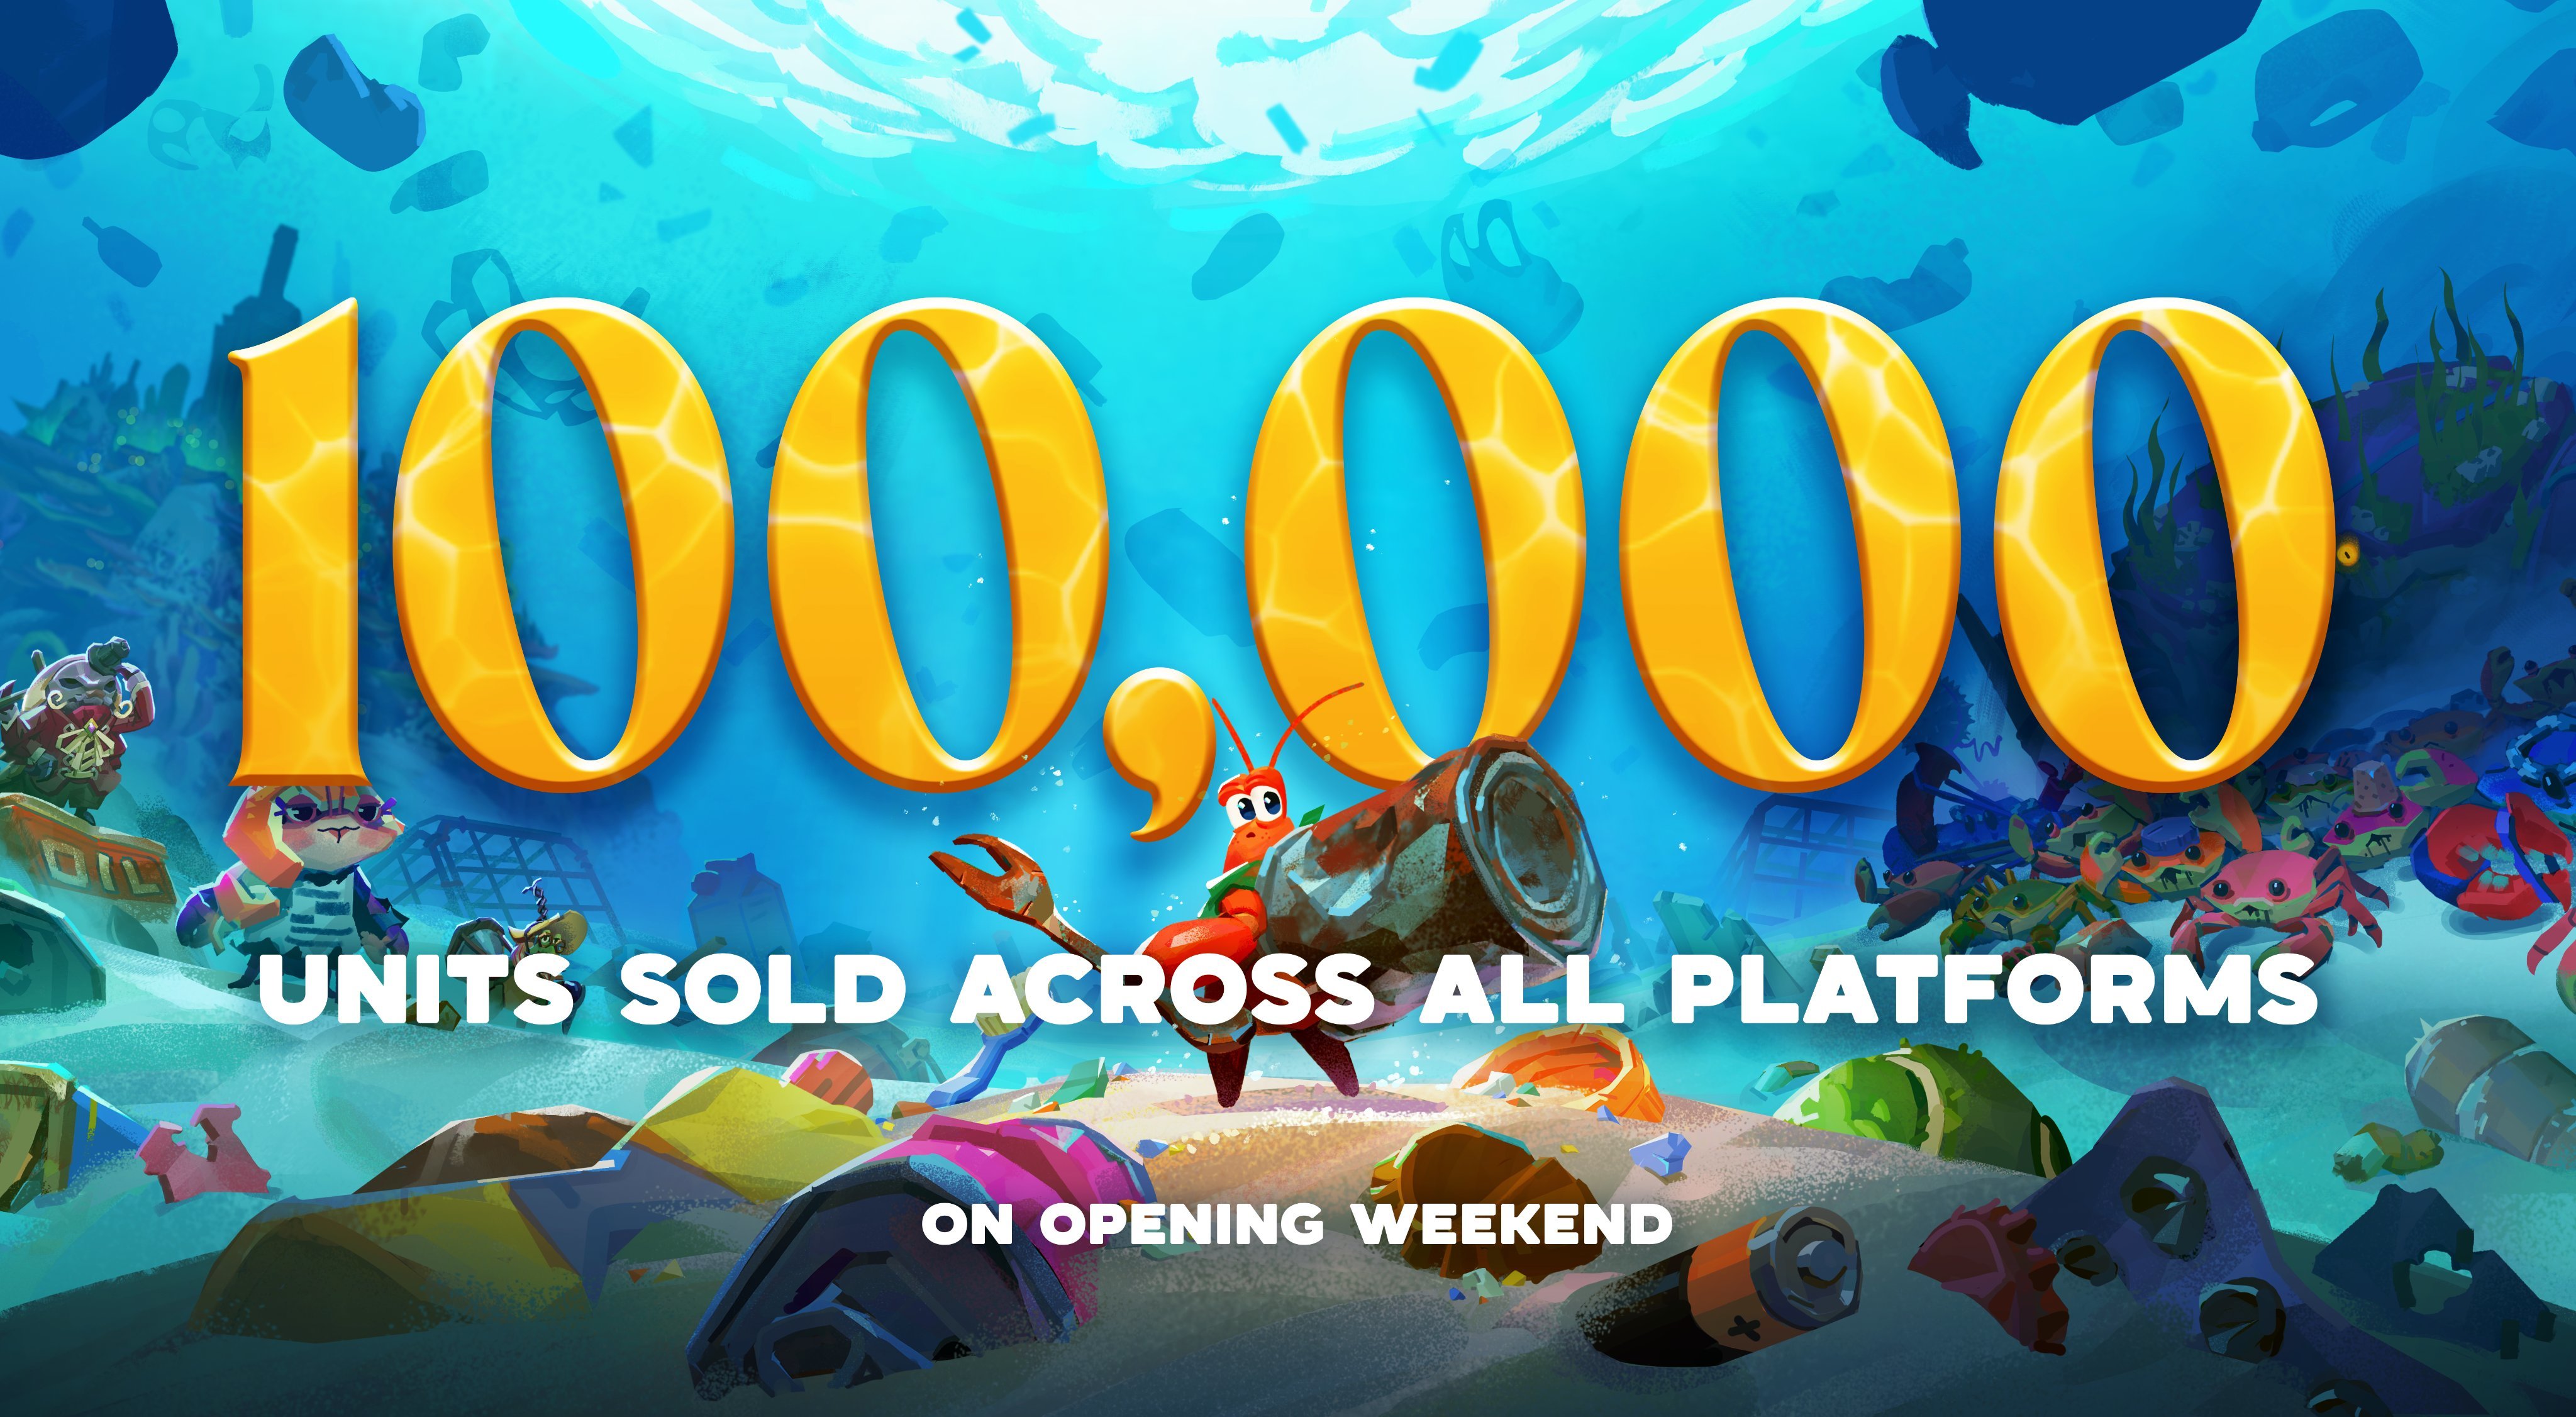 Another Crab&#39;s Treasure empieza a salir de la concha con 100.000 unidades vendidas en sus primeros días